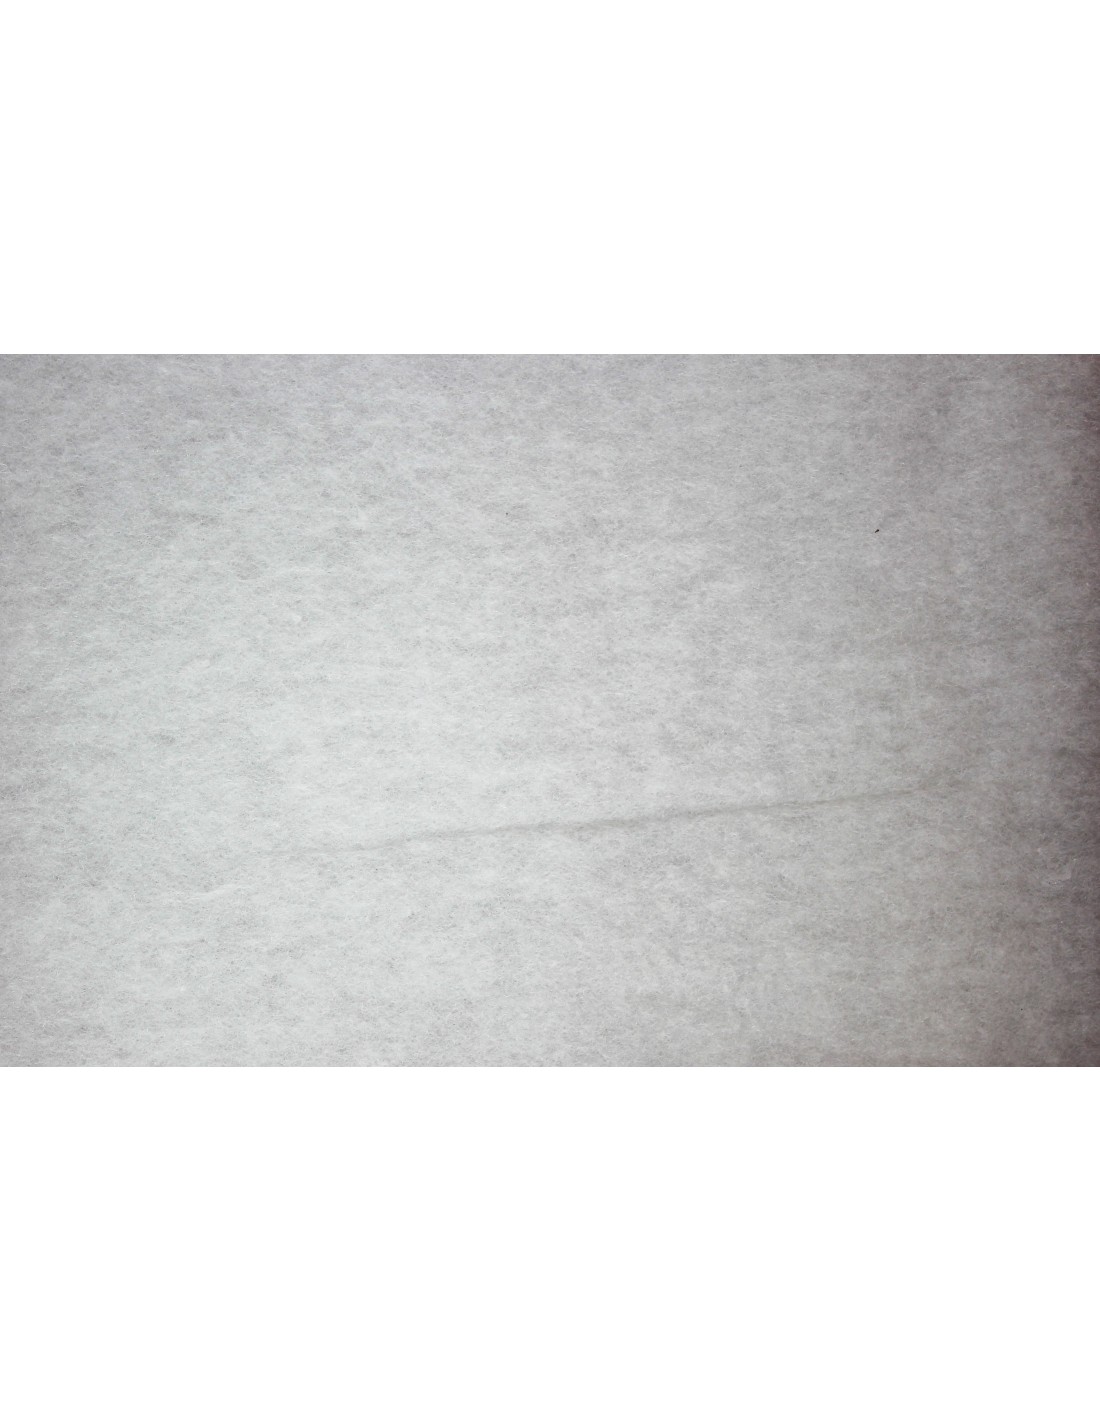 Rouleau de ouate polyester non feu M1 pour tissu tendu, décor